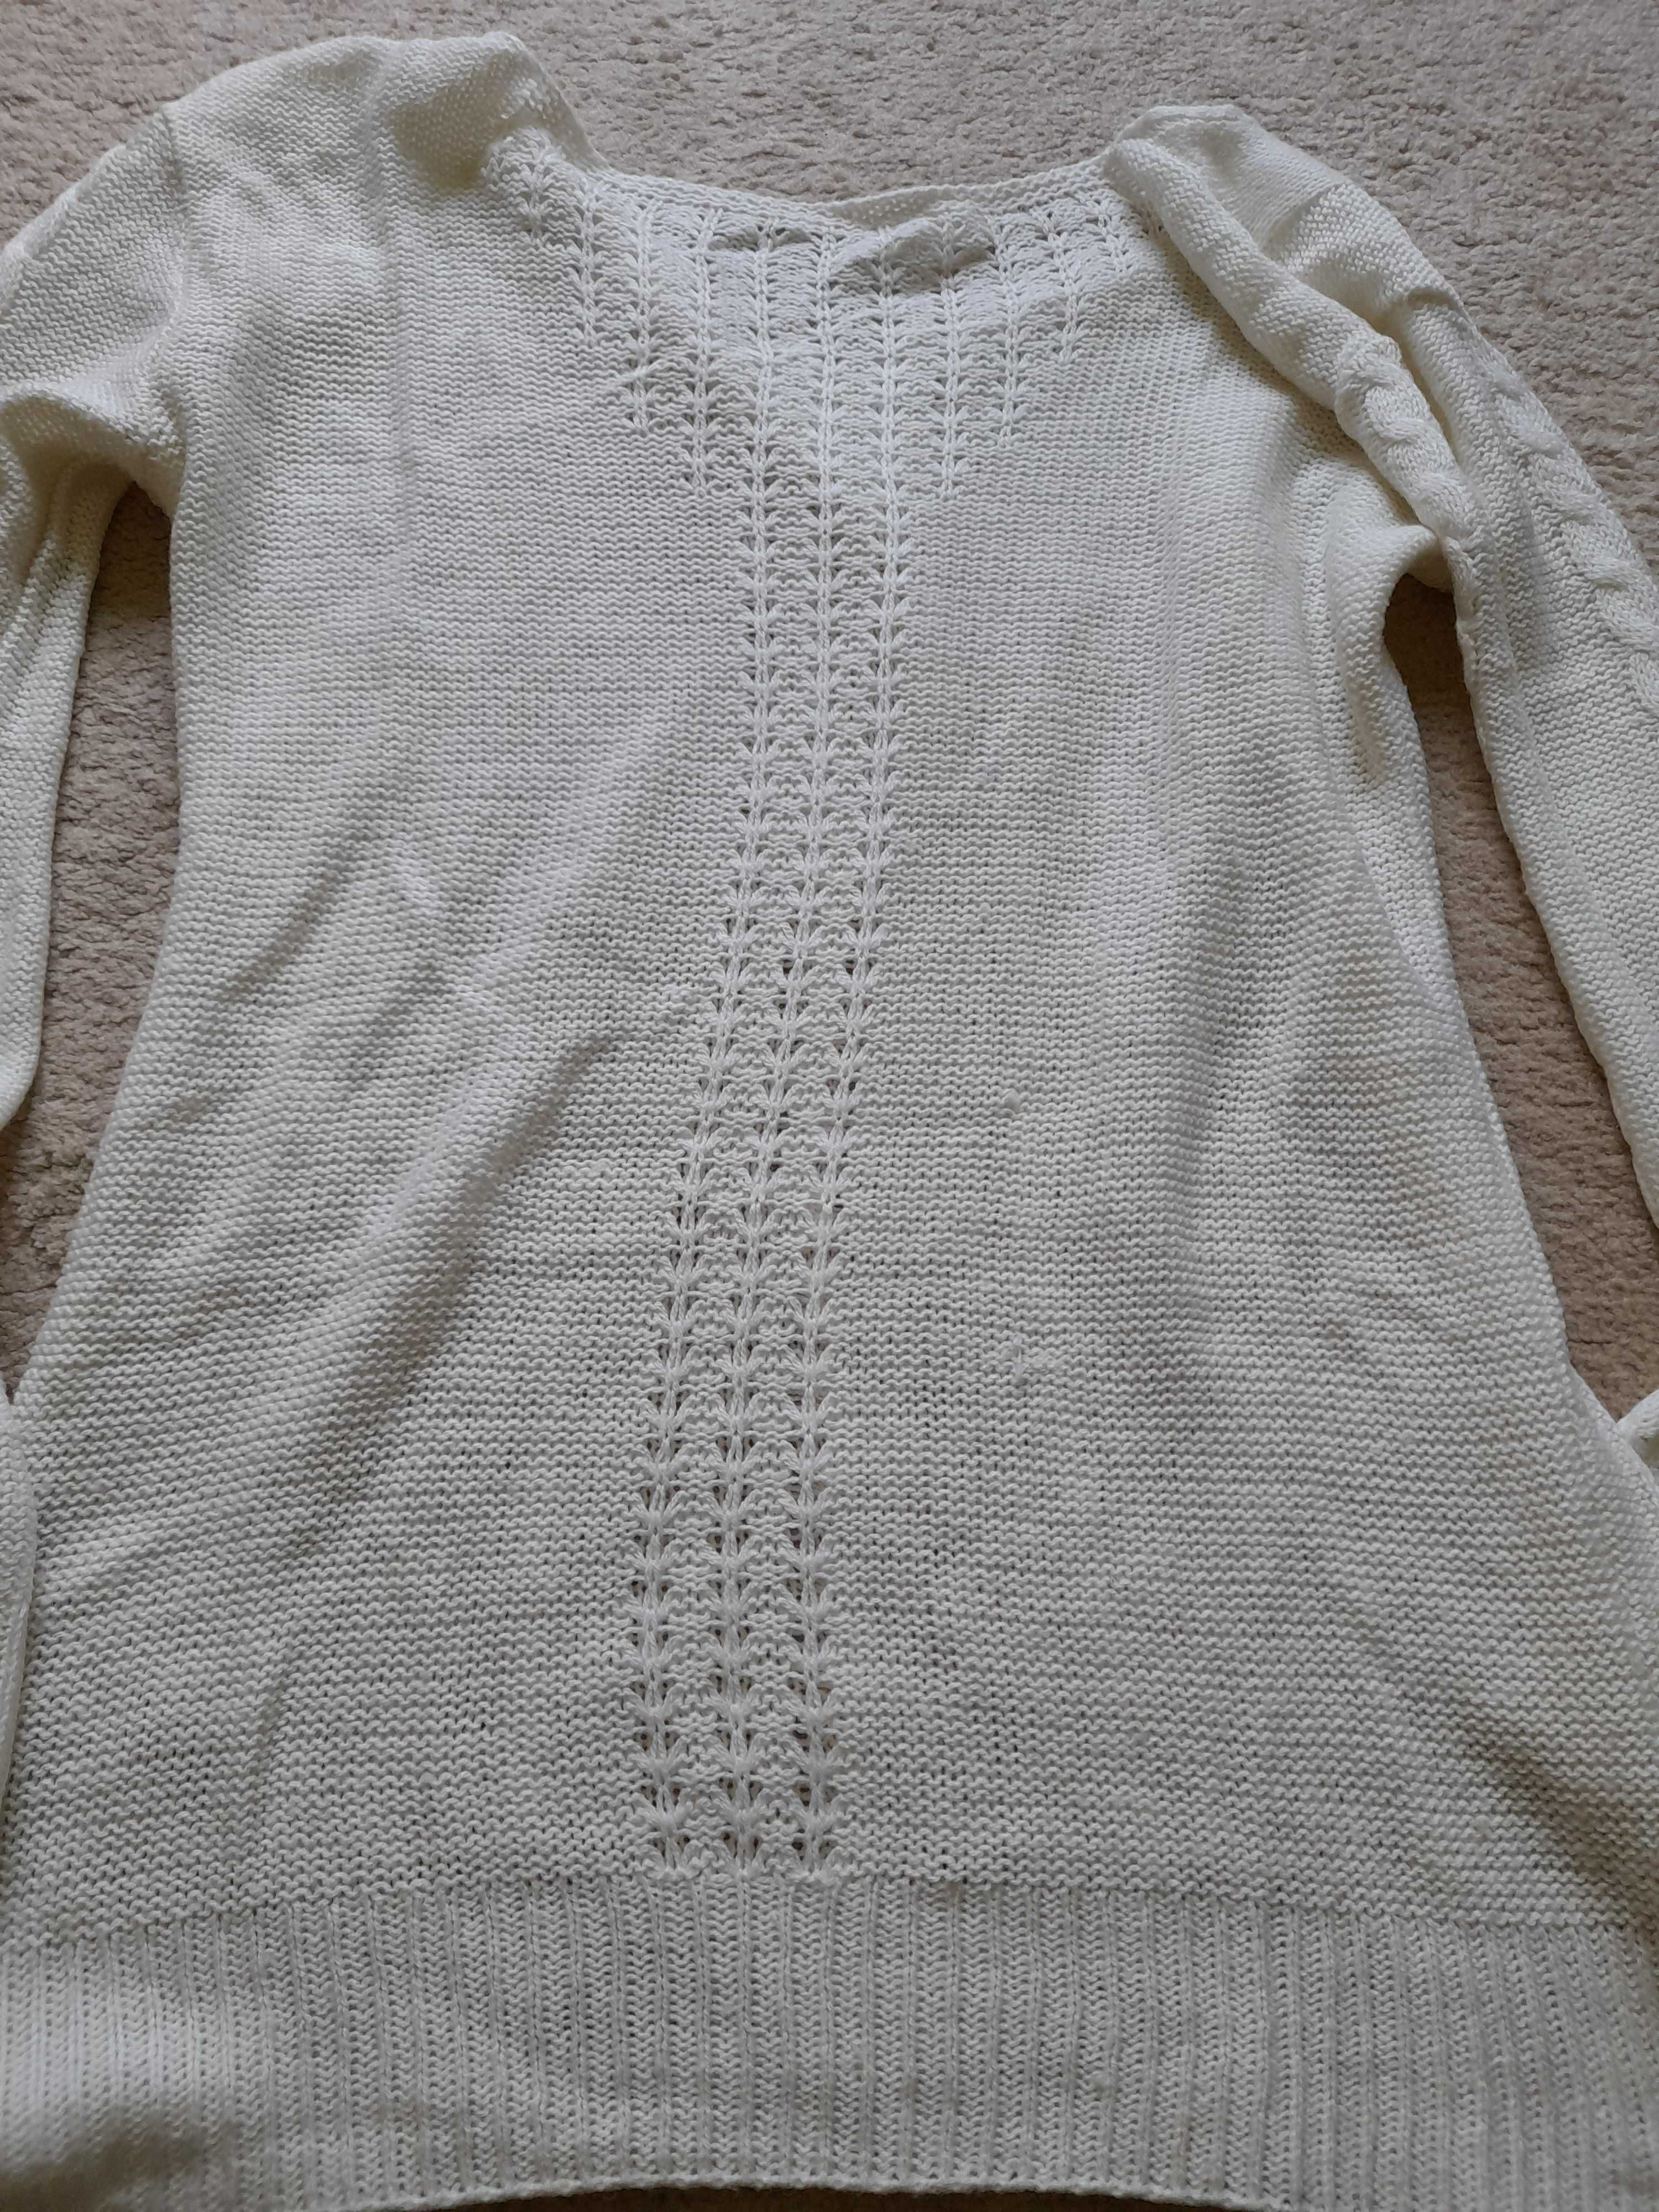 Sweterek damskie, biały z perełkami, delikatny, M/38/L/40